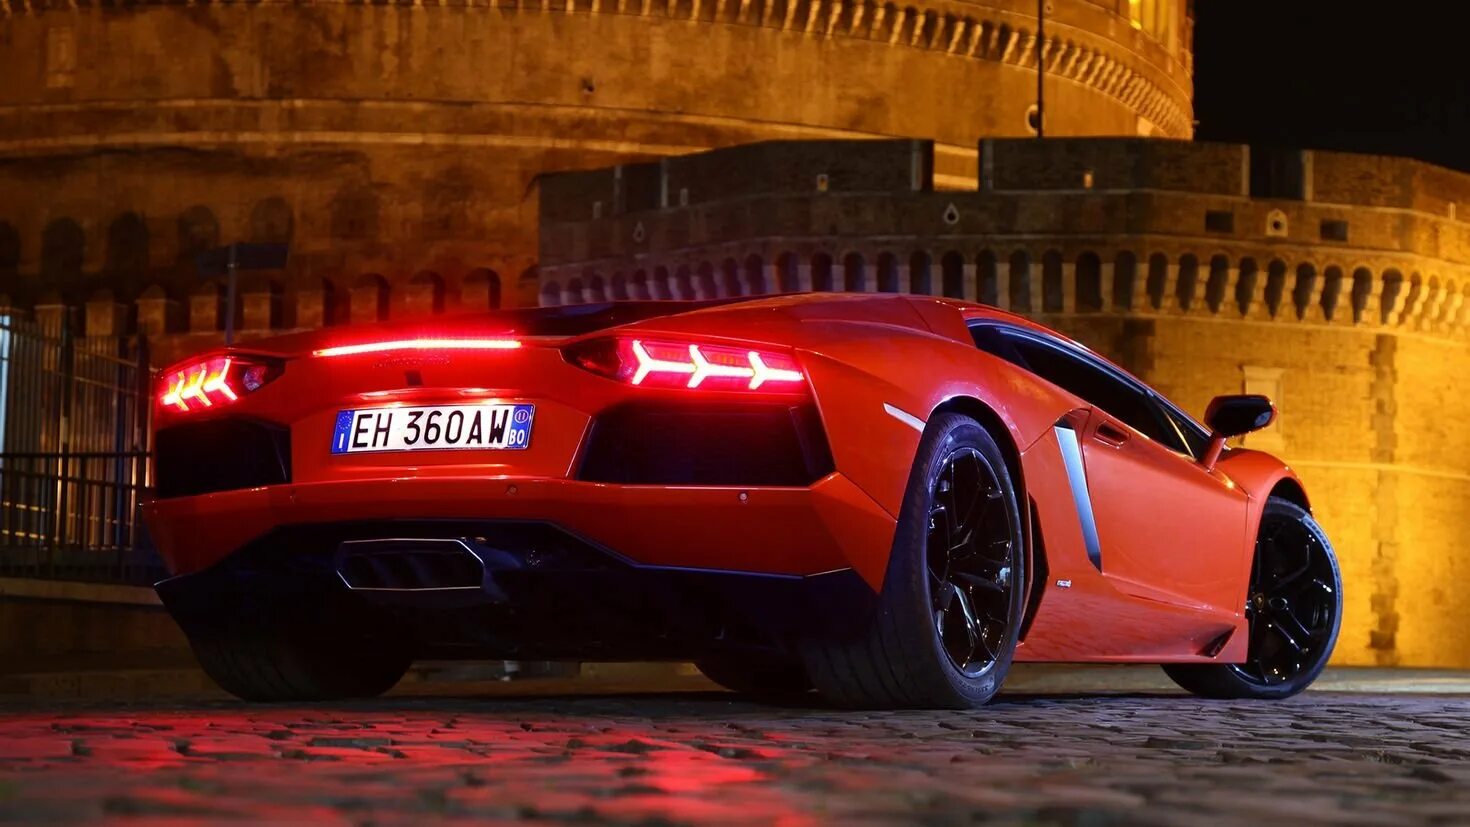 Крутой фон для фото. Lamborghini Aventador lp700-4 красный. Крутые машины HD. Обои на ПК. Крутые заставки.